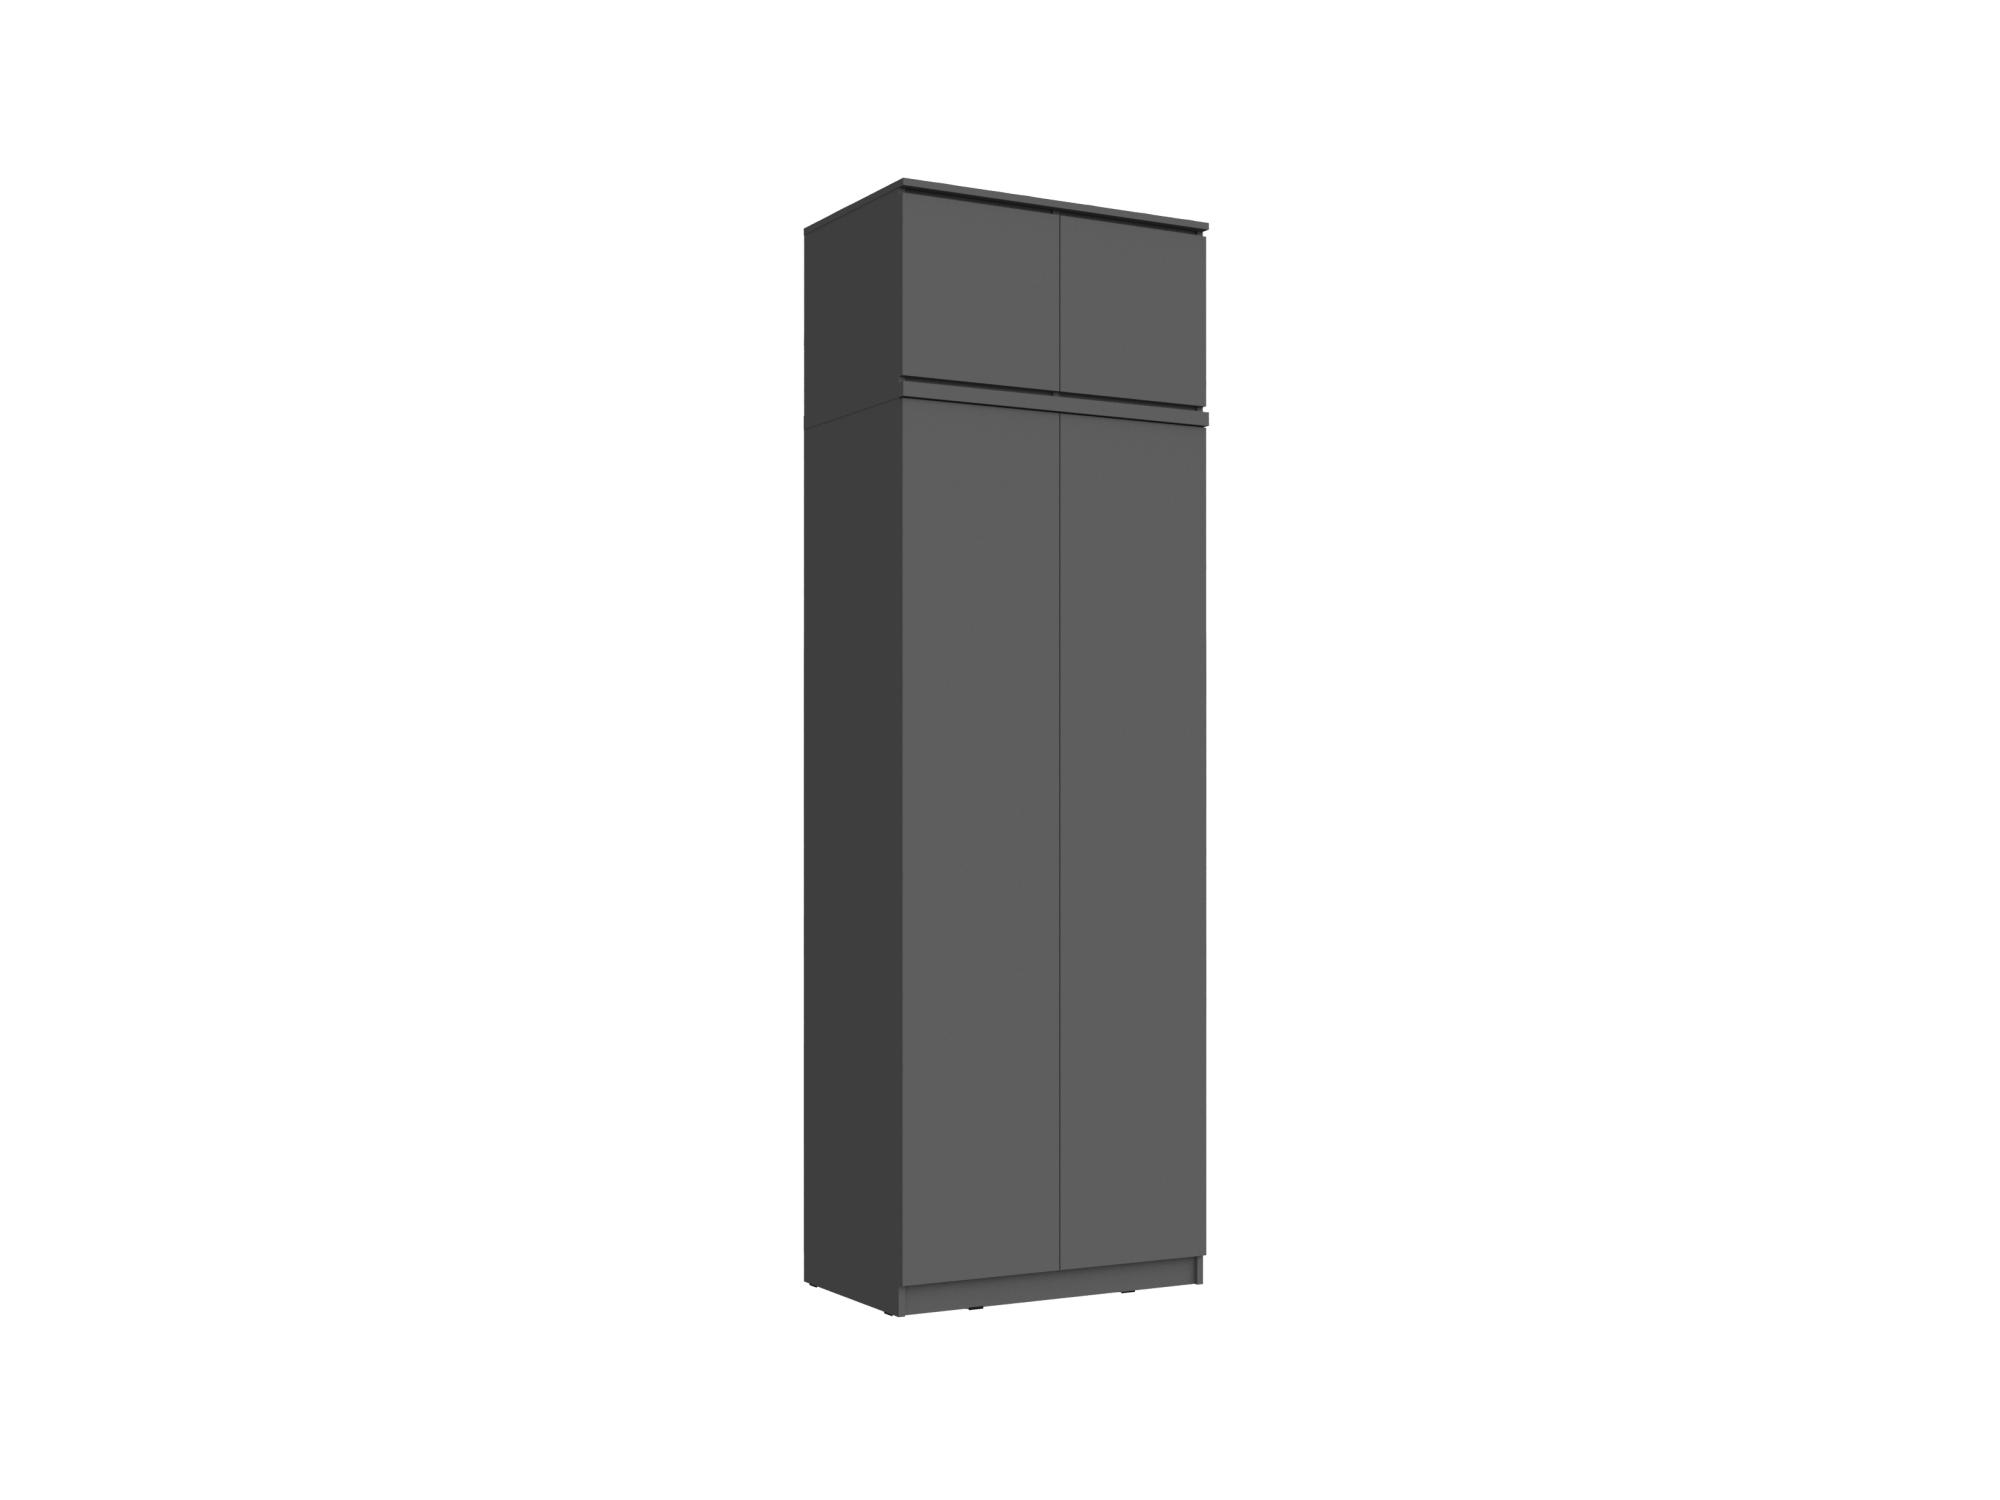 Челси Шкаф 2-х створчатый платяной + антресоль к шкафу 800 (Графит, Графит) Черный, ЛДСП челси шкаф 2 х створчатый комбинированный антресоль к шкафу 900 графит графит графит черный лдсп